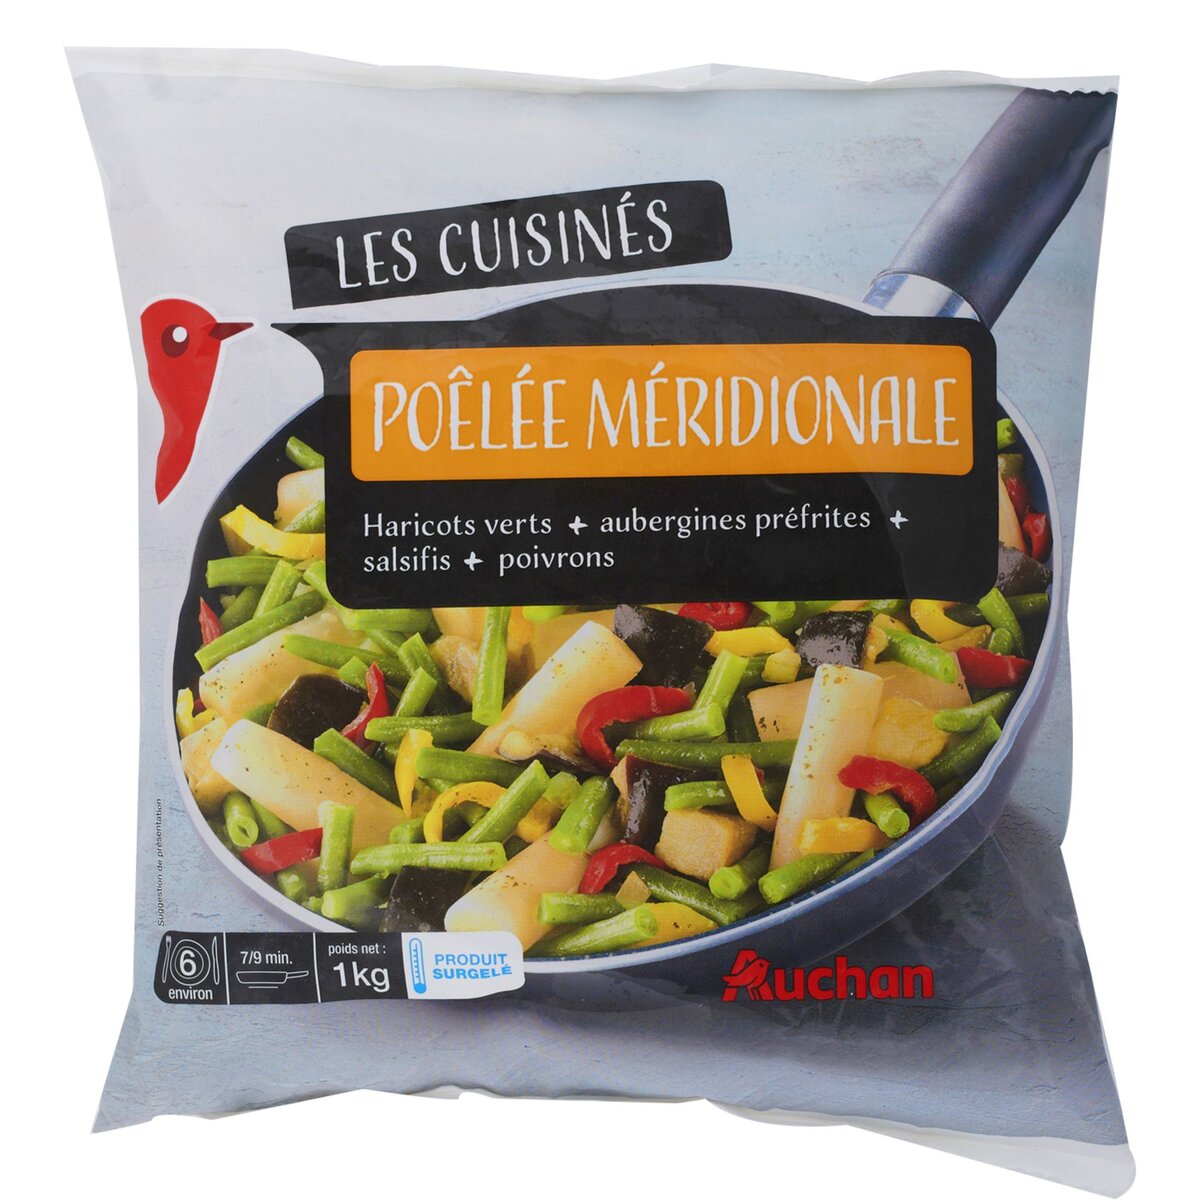 AUCHAN Auchan Poêlée méridionale 1kg 1kg